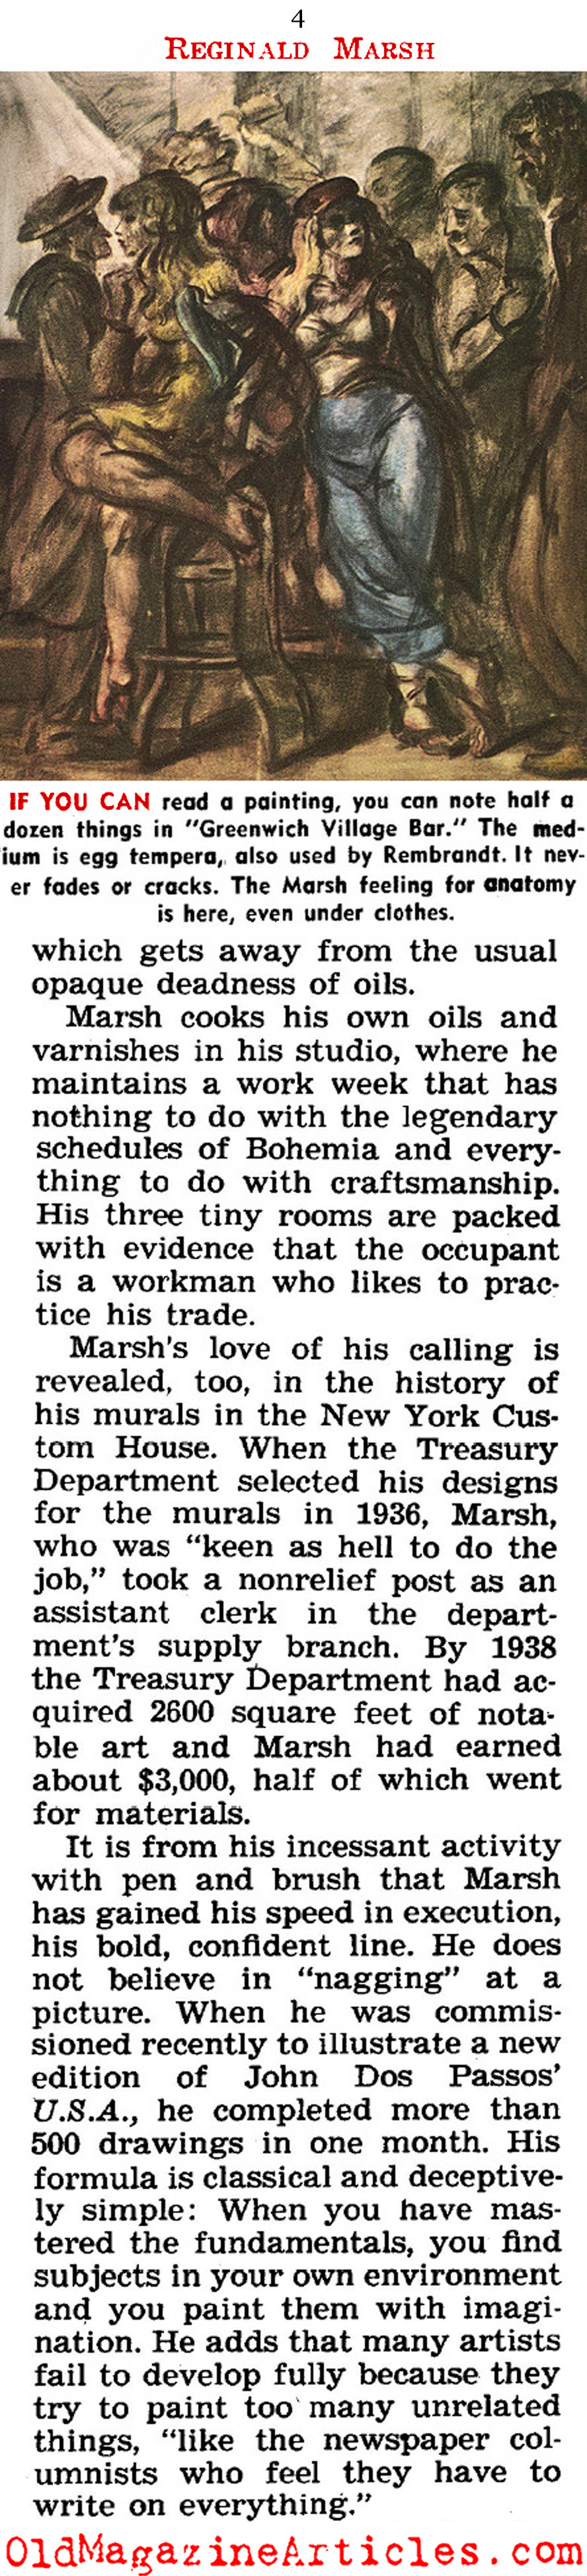 The Women of Reginald Marsh ('47 Magazine)